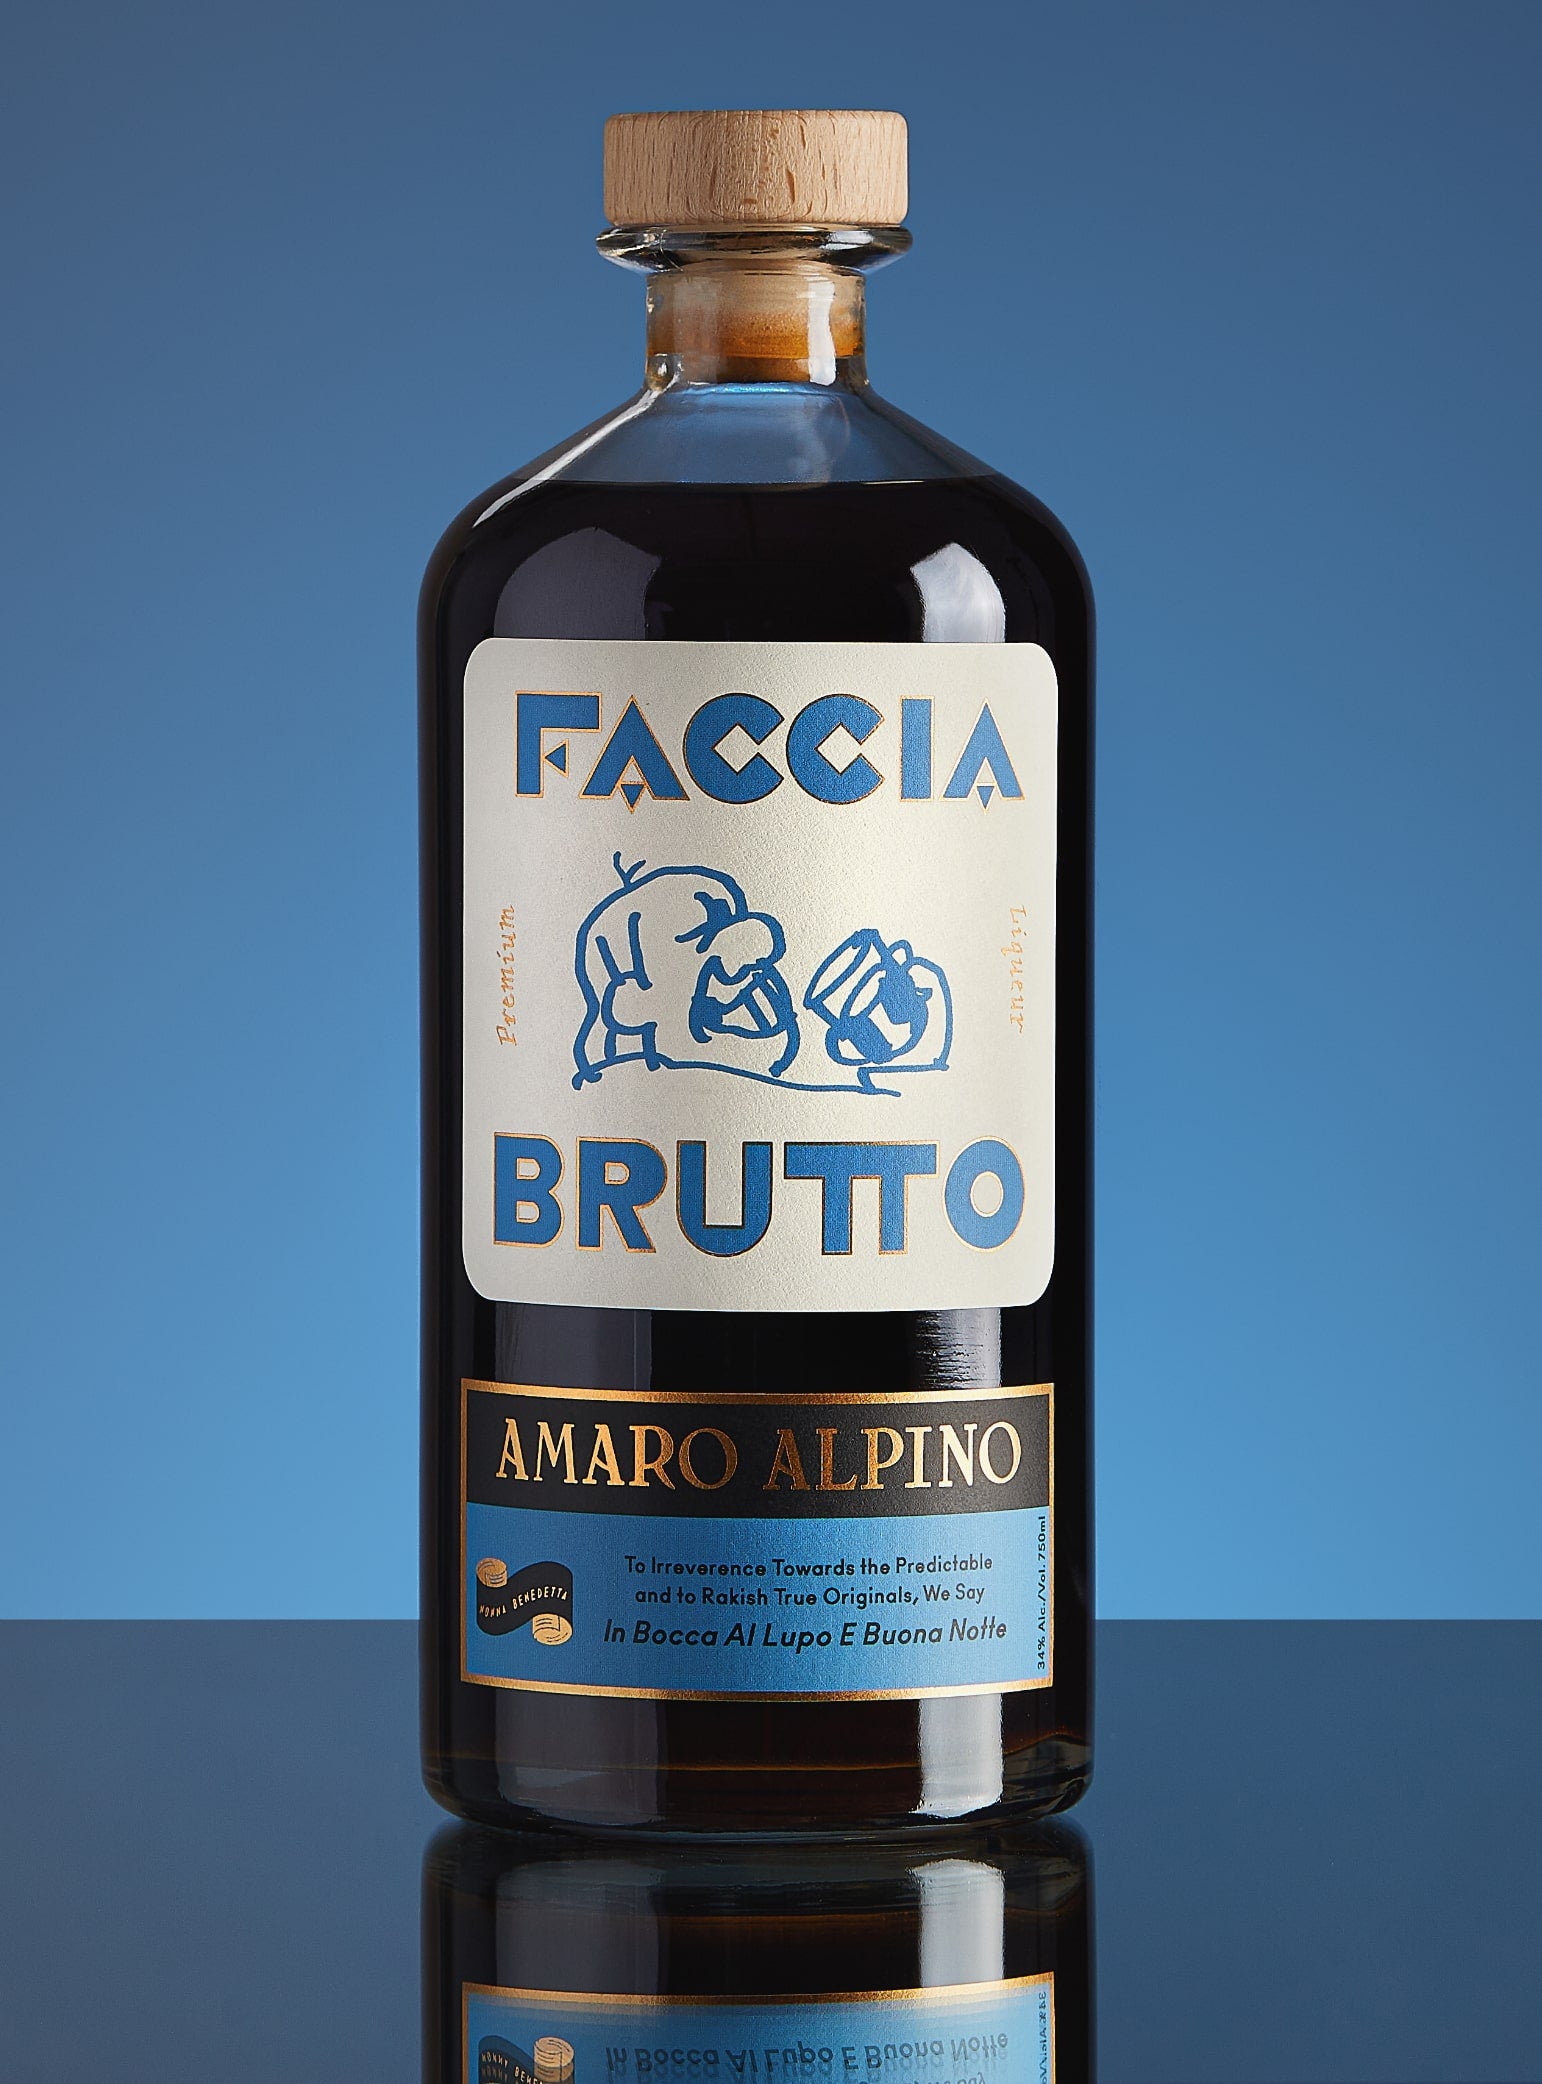 Cocktail glass with Faccia Brutto Amaro Alpino bottle in the background